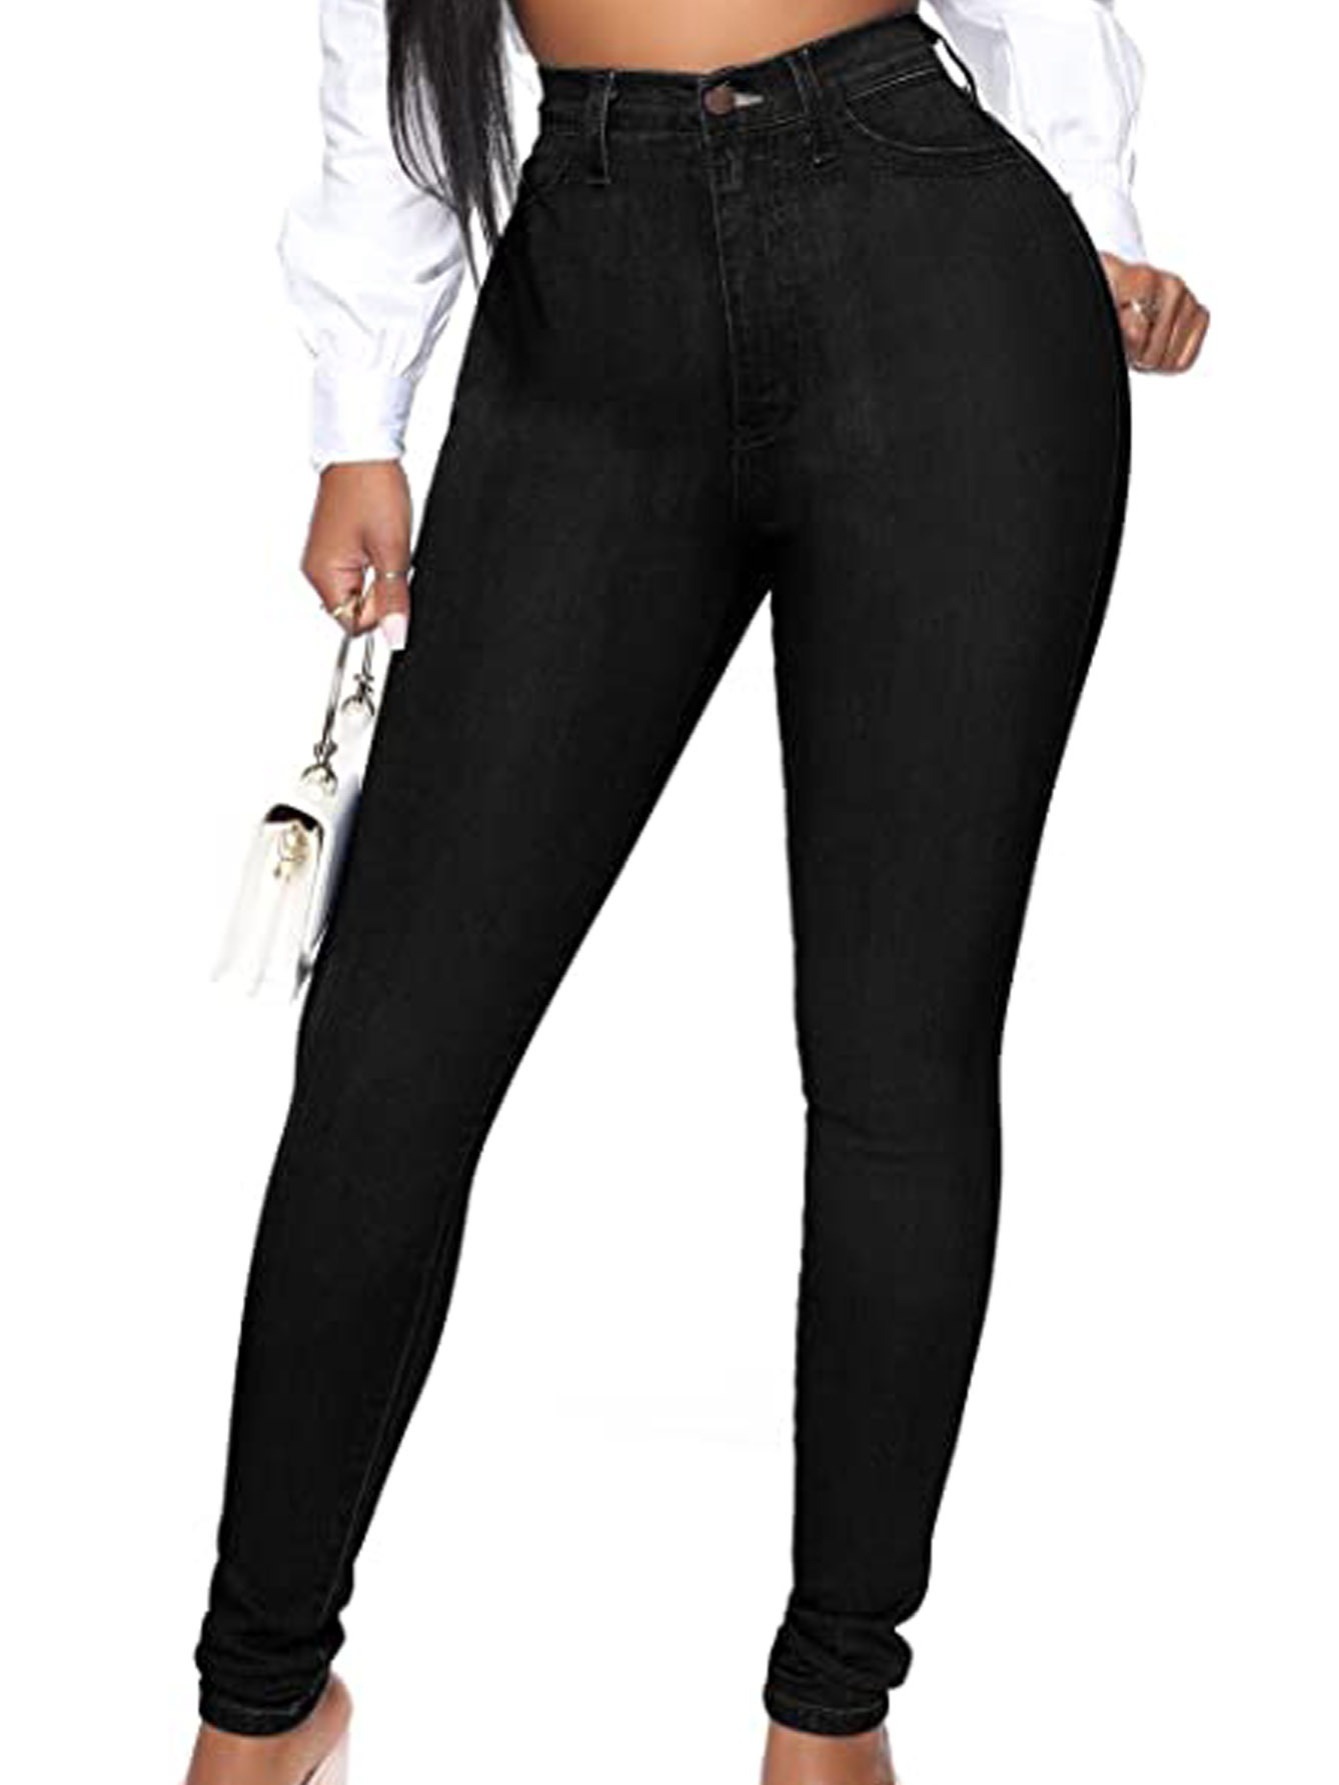 Jeans ajustados de cintura alta sexy negros, pantalones de mezclilla  informales de tiro alto ajustados de alta elasticidad, jeans y ropa de  mezclilla